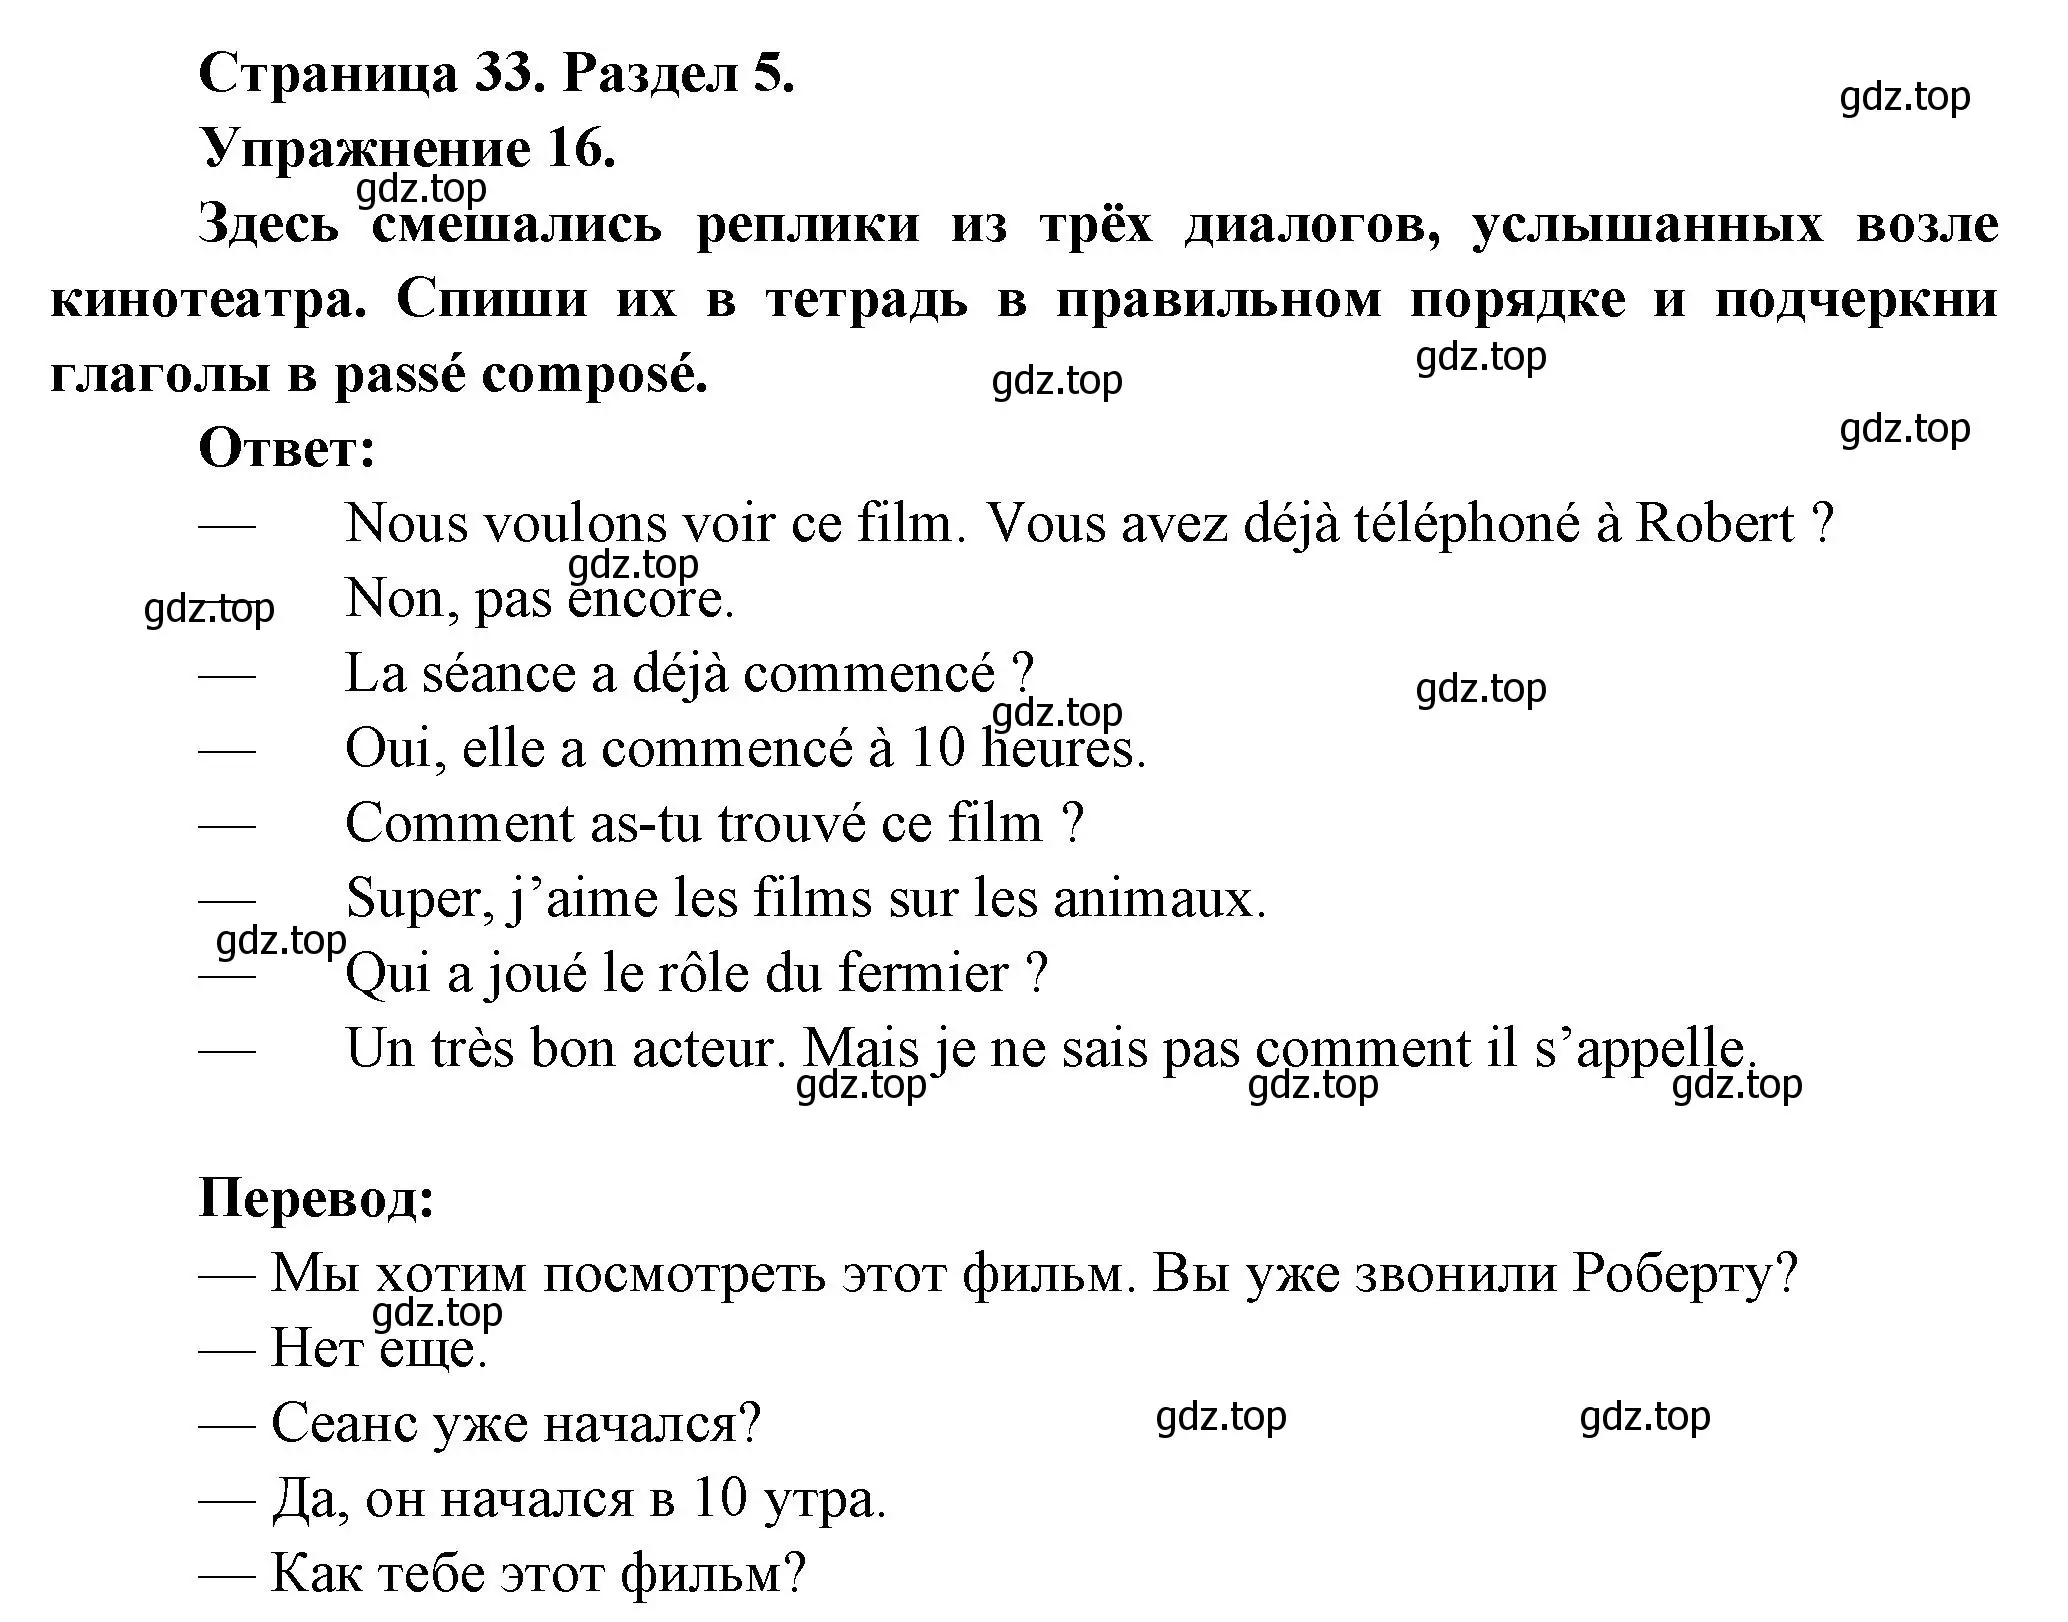 Решение номер 16 (страница 33) гдз по французскому языку 5 класс Береговская, Белосельская, учебник 2 часть